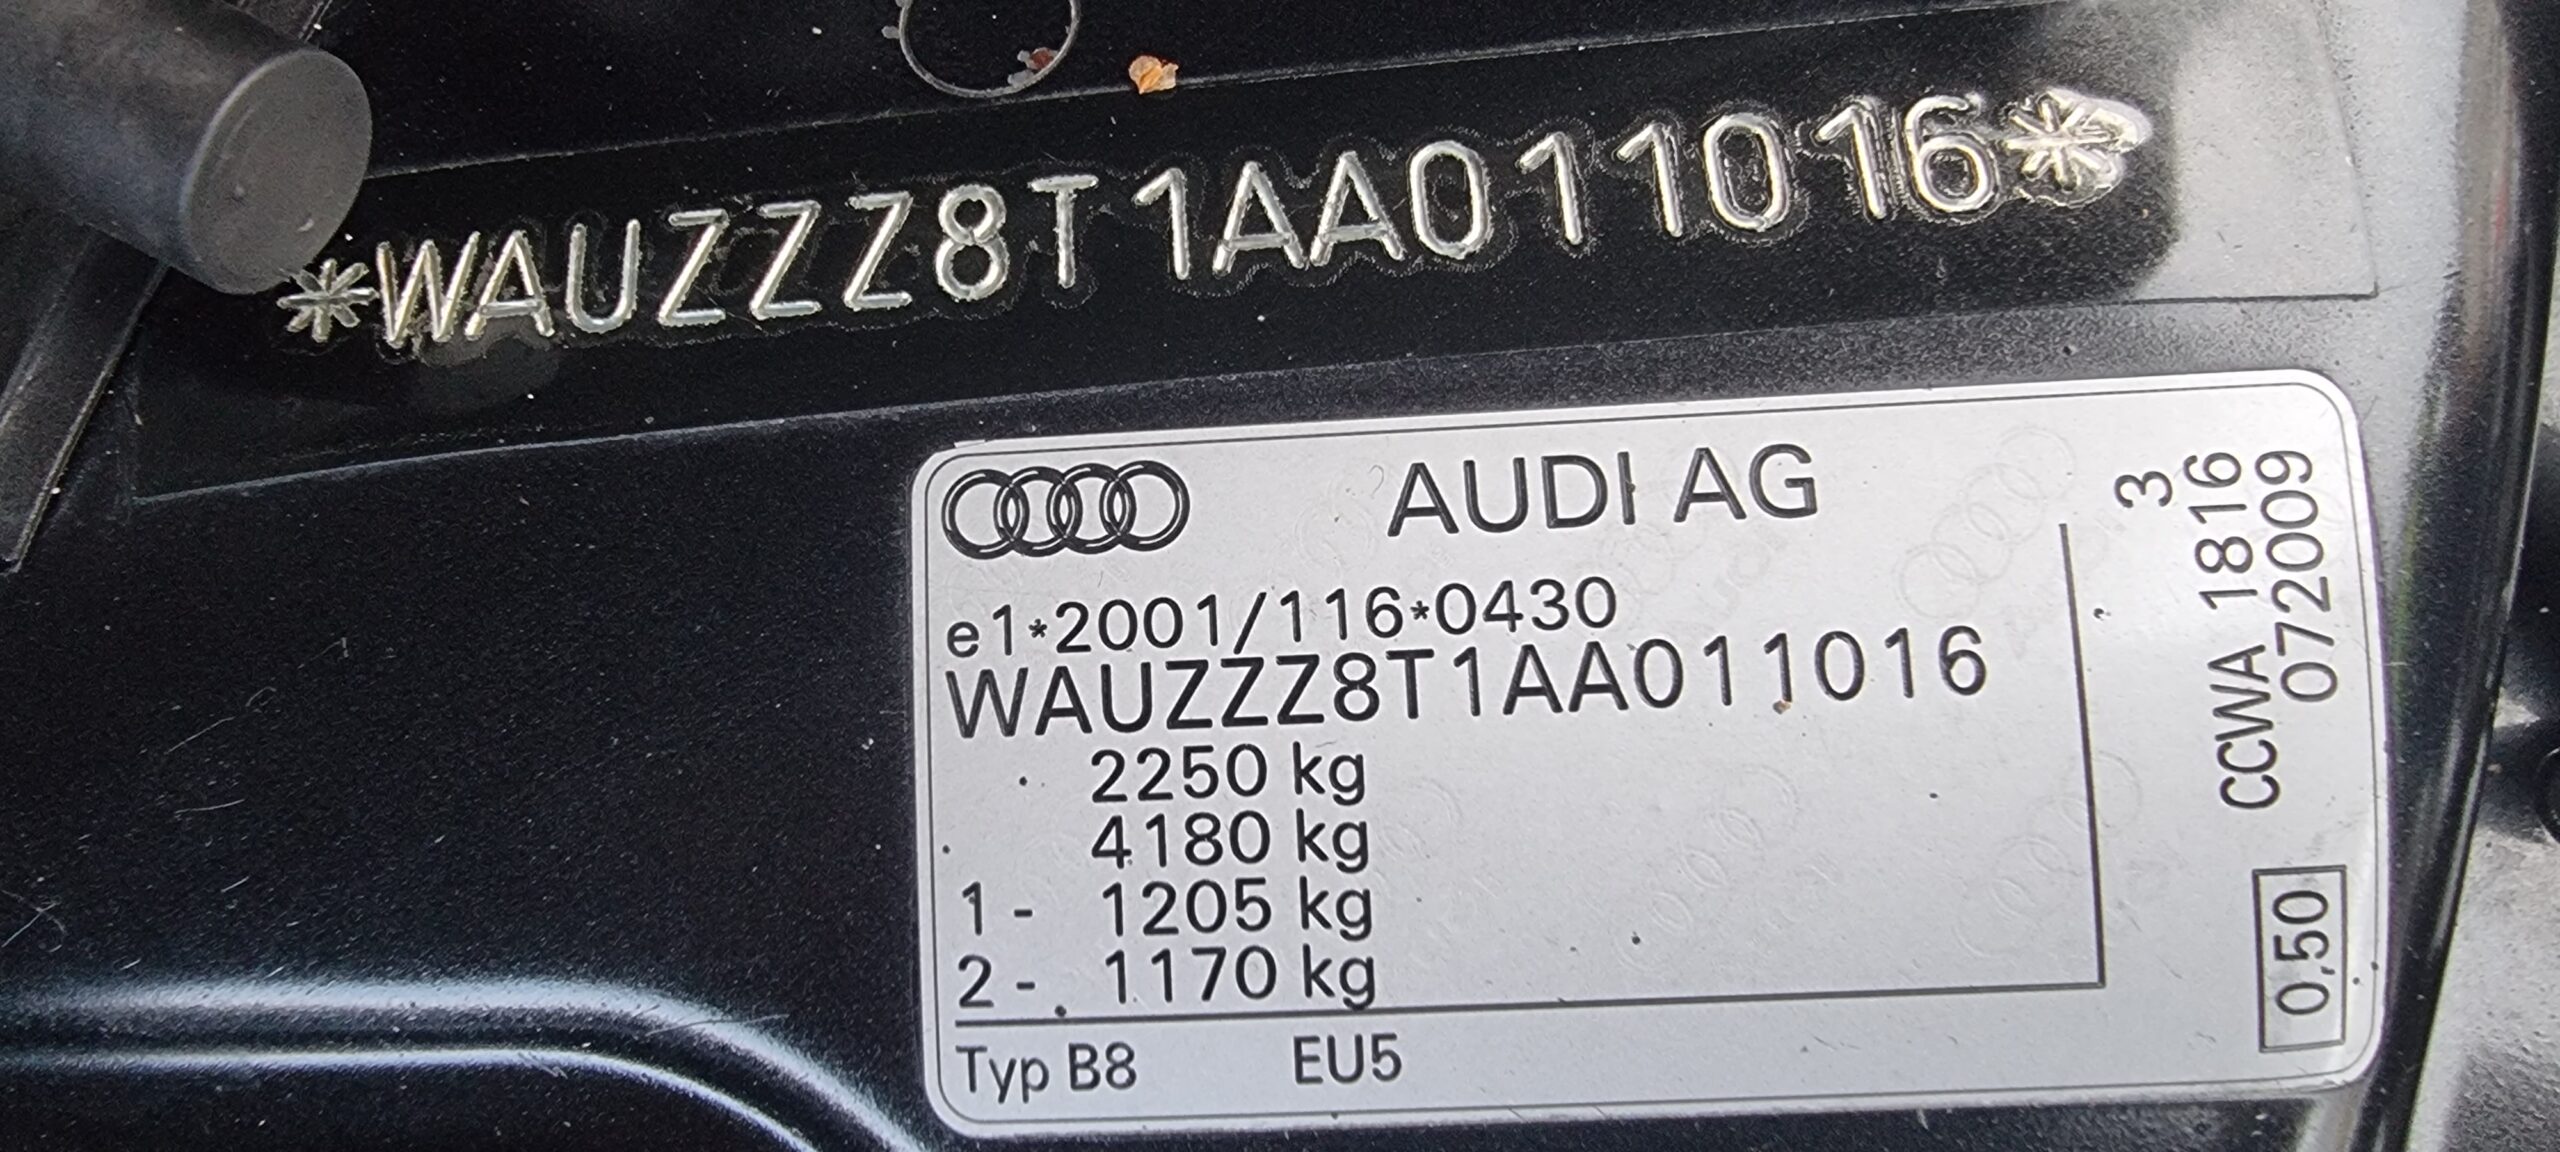 AUDI A5 EXCLUSIV QUATTRO, 3.0 TDI, 239 CP, EURO 5, AN 2010